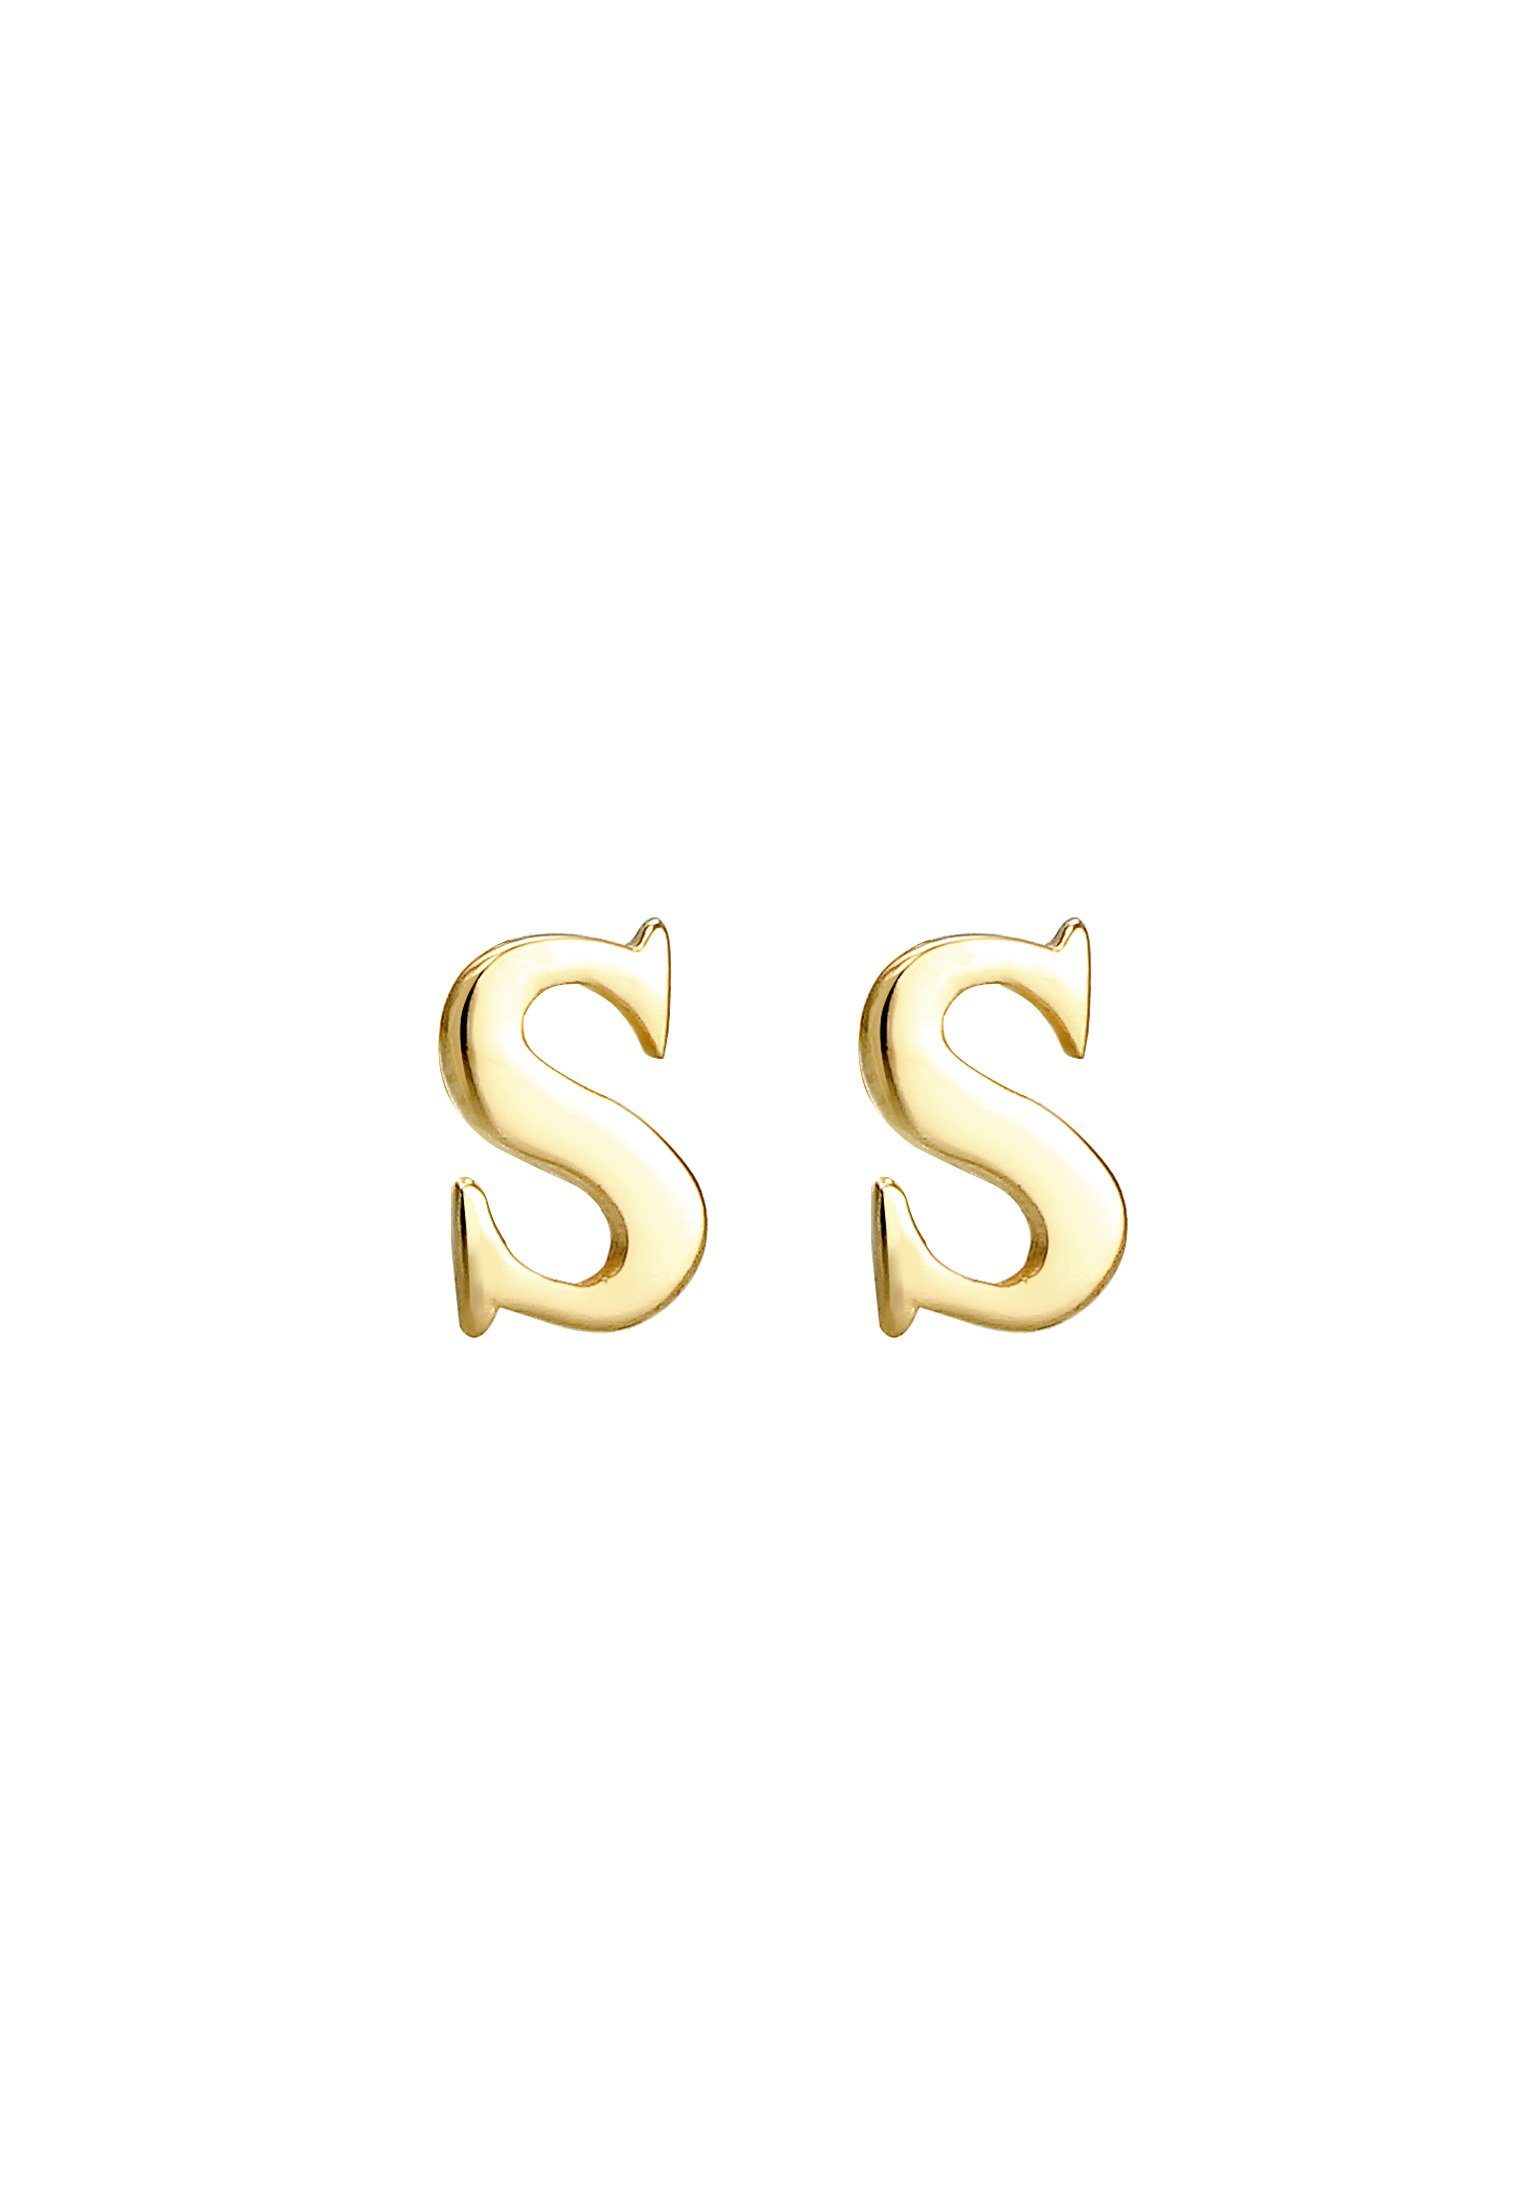 Gold Minimal S Initialen Ohrstecker Stecker Paar 925 Buchstabe Silber Elli